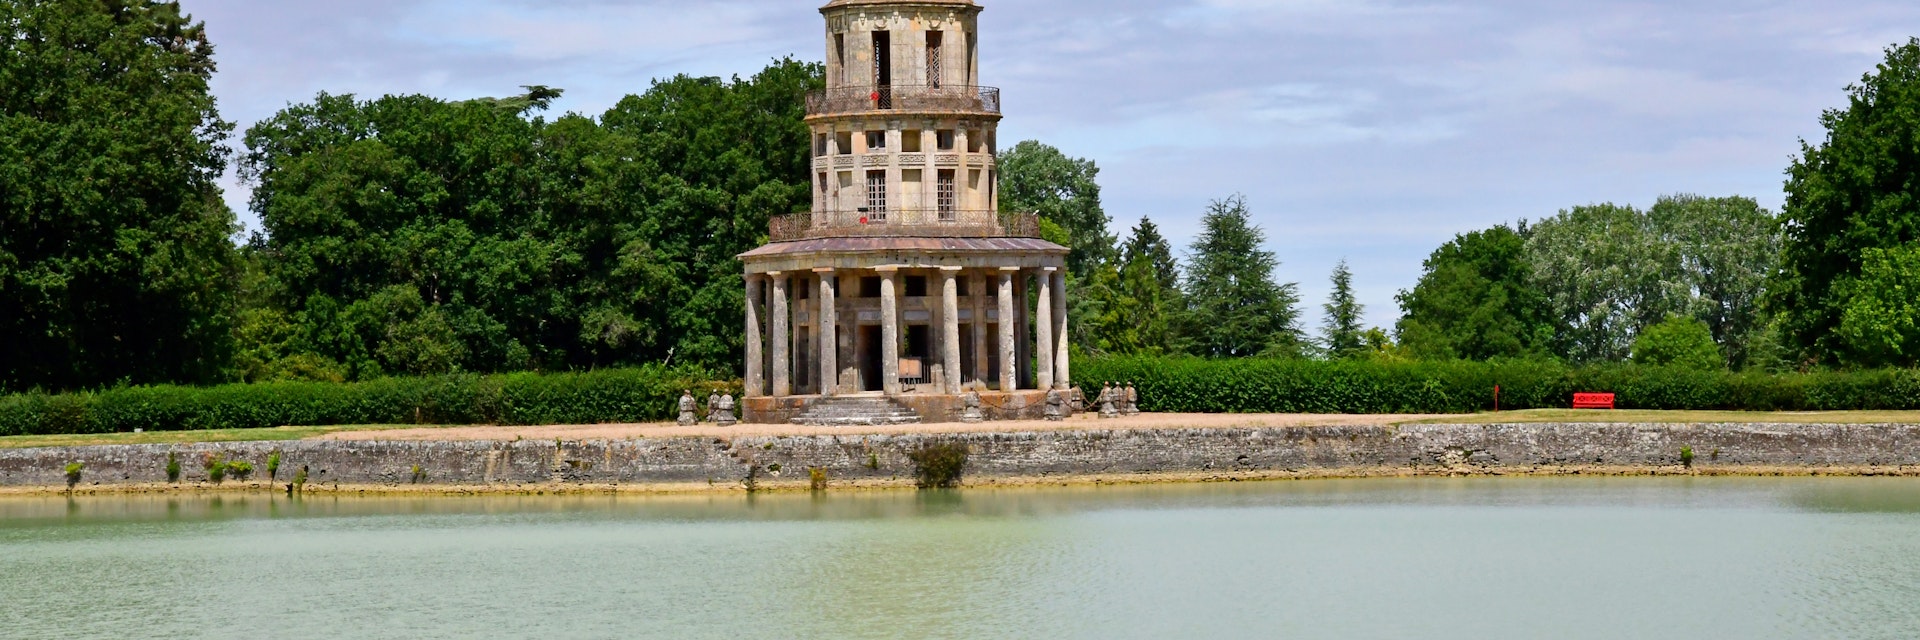  The Chanteloup pagoda, Amboise, France.